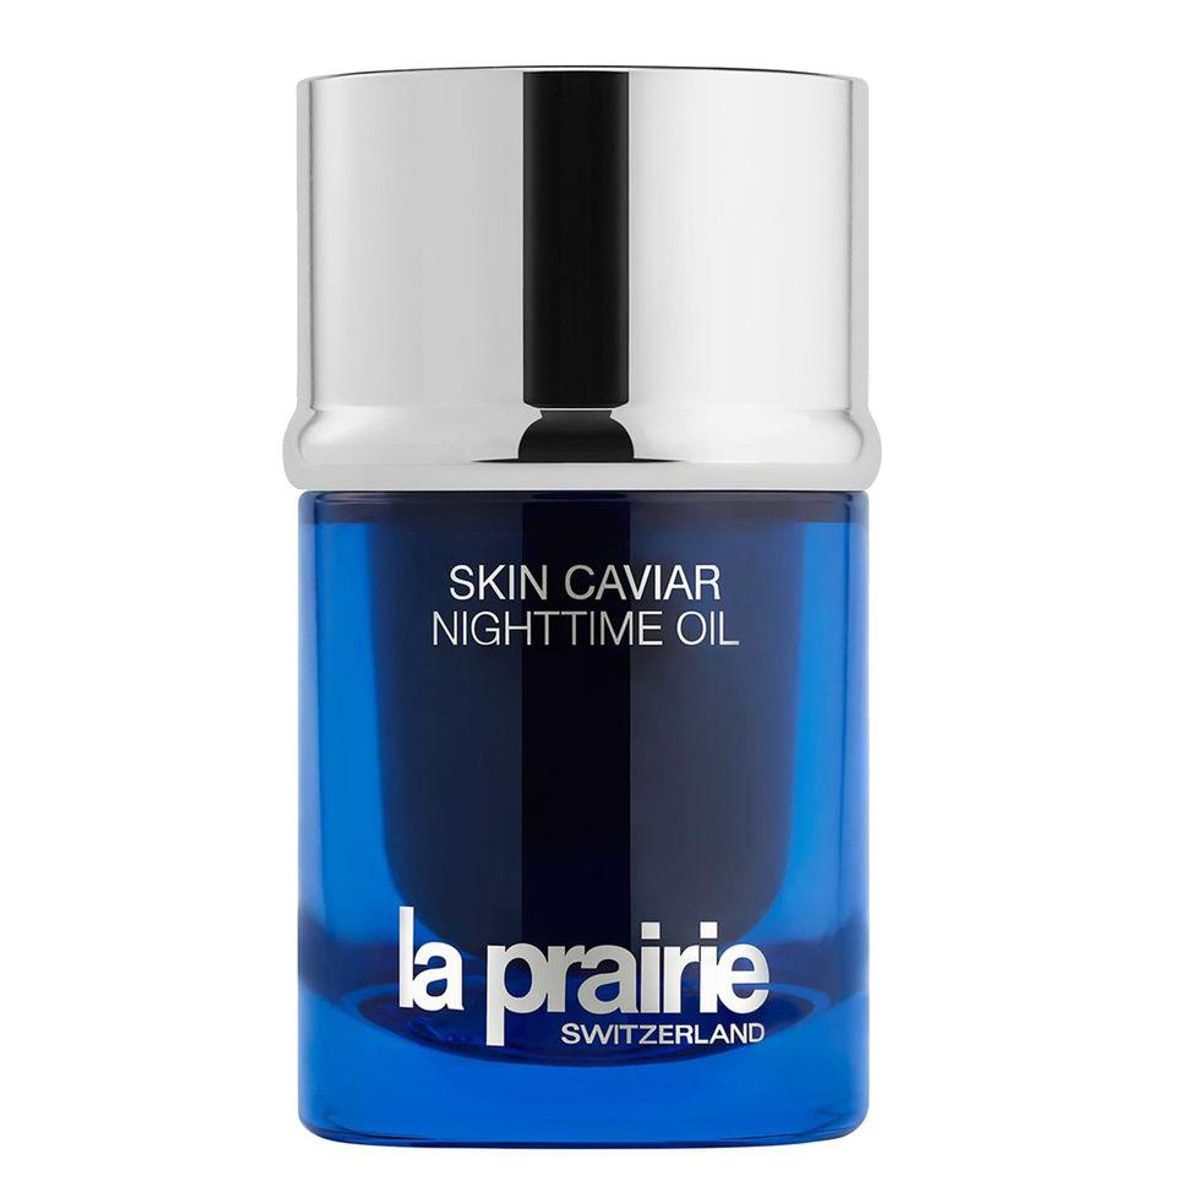 la prairie skin caviar nighttime oil